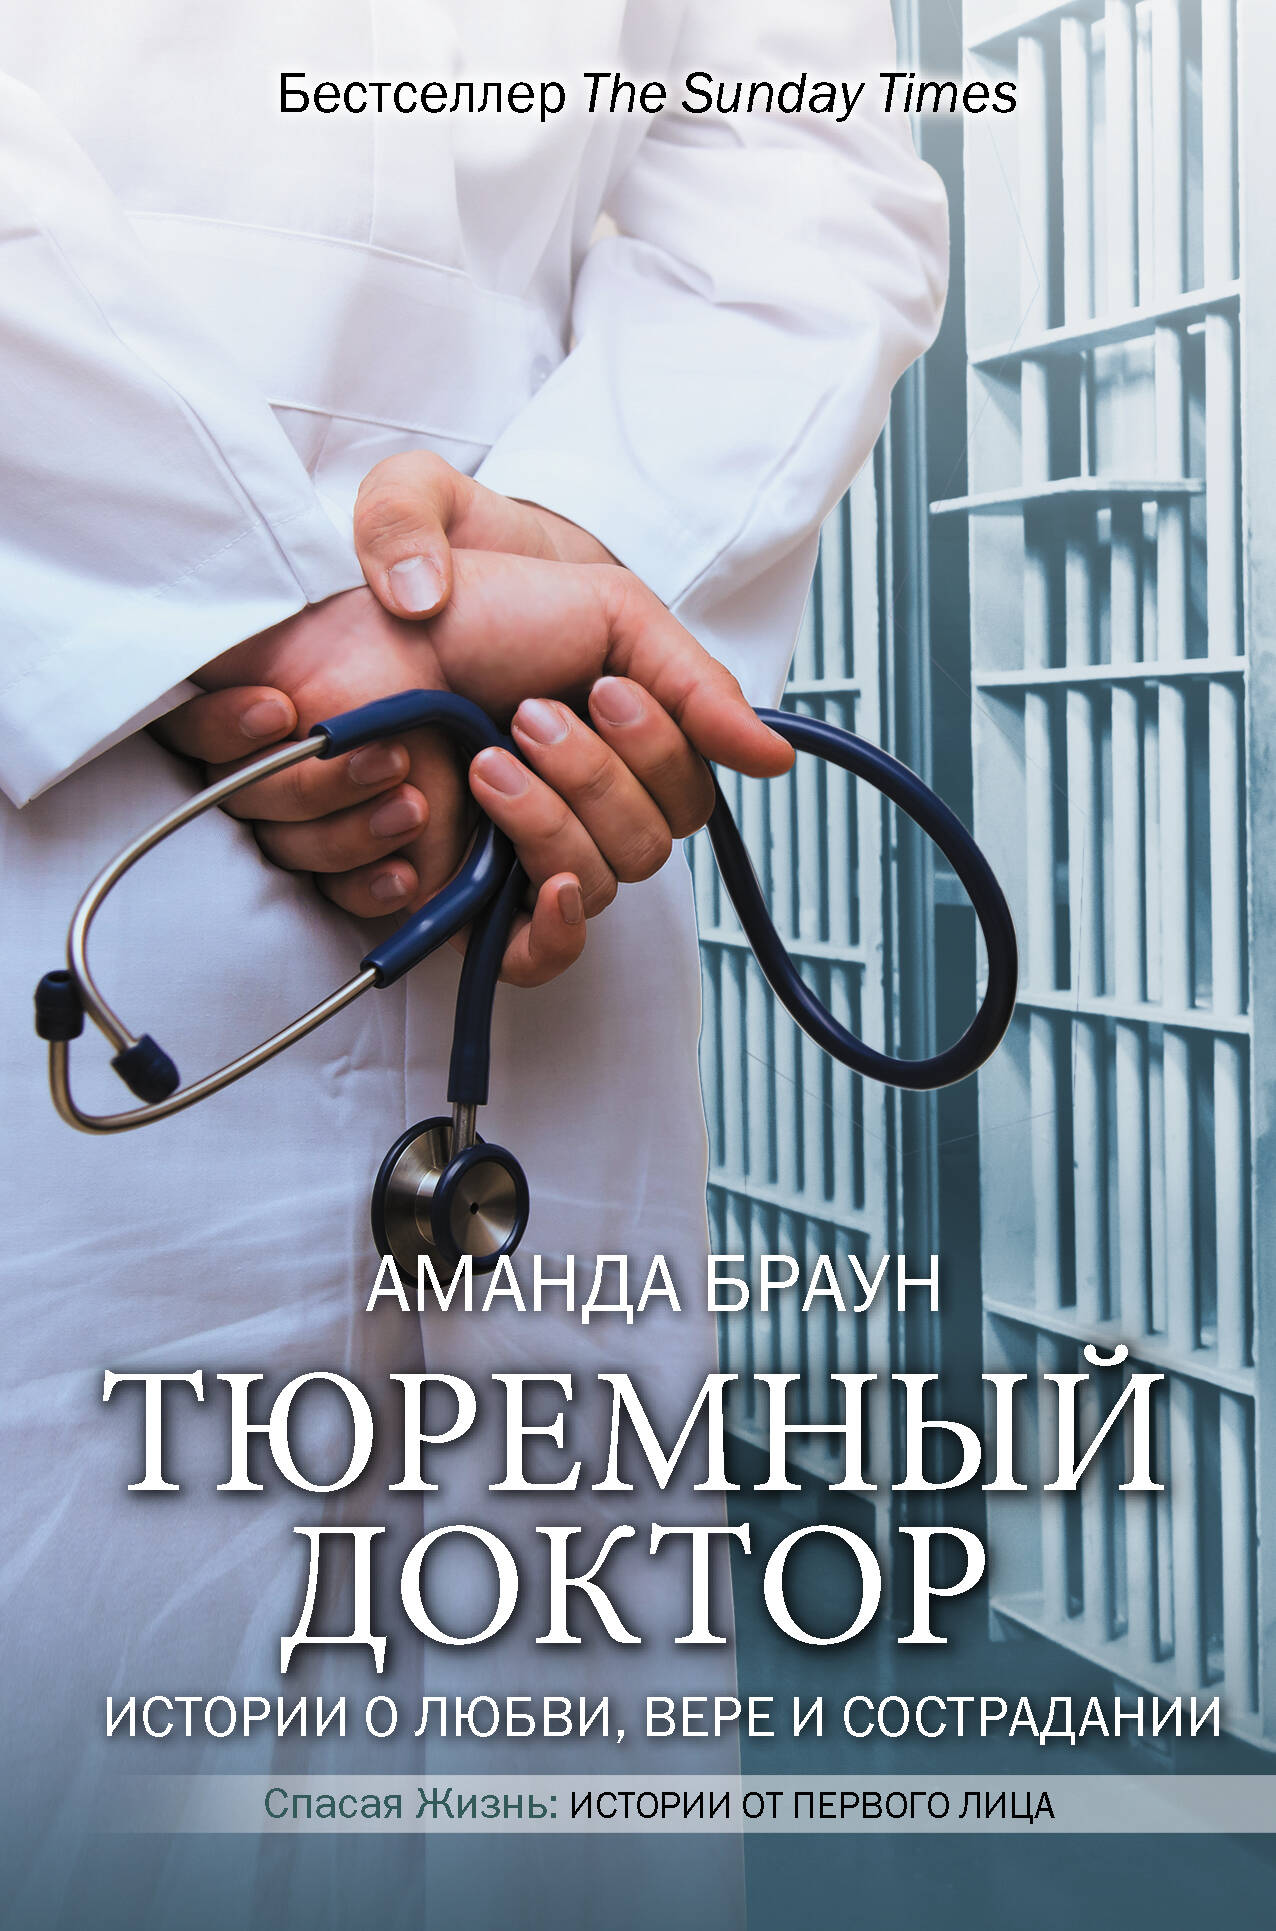 Браун Аманда Тюремный доктор. Истории о любви, вере и сострадании - страница 0